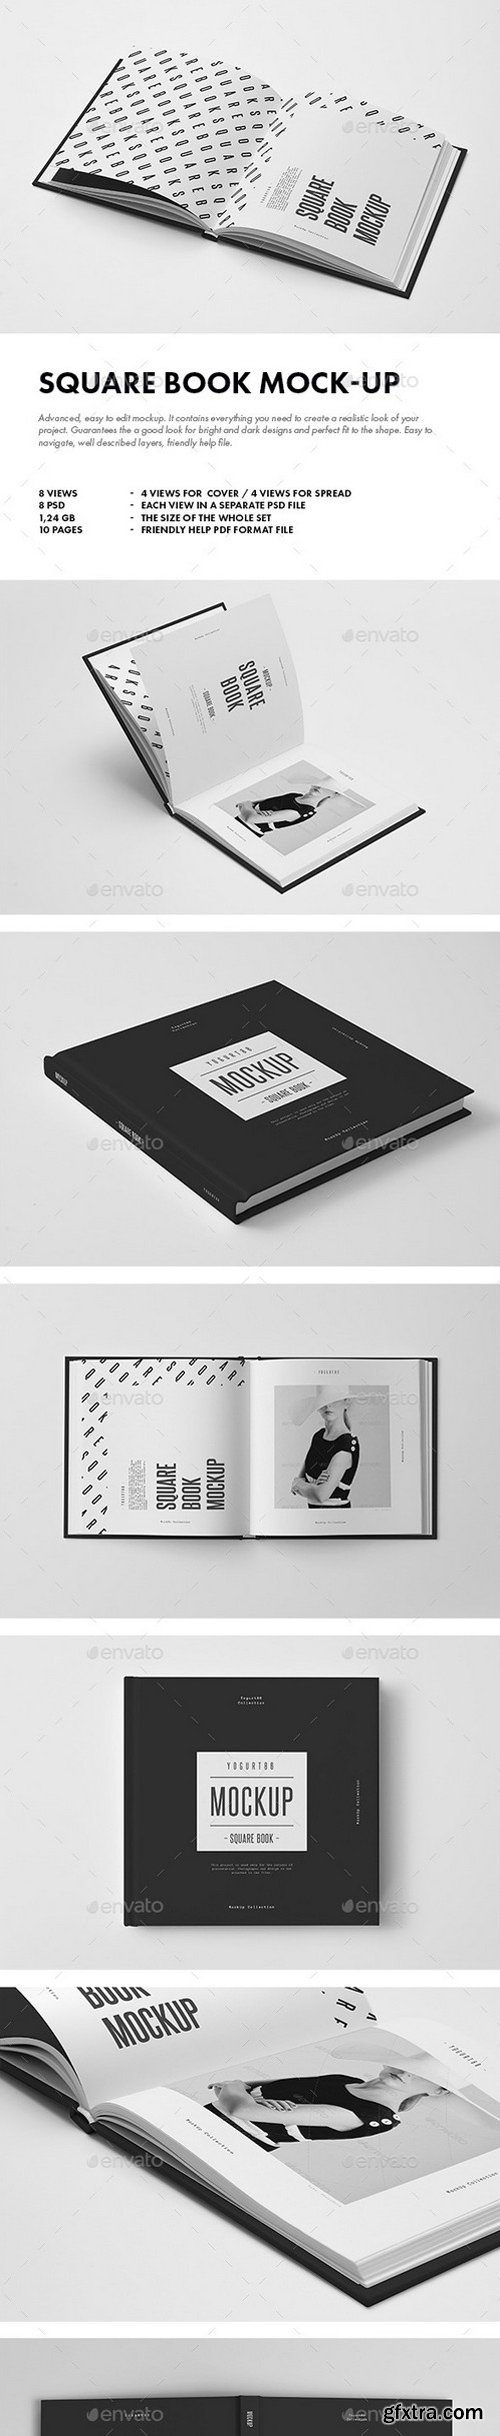 Graphicriver - Square Book Mockup 8911213